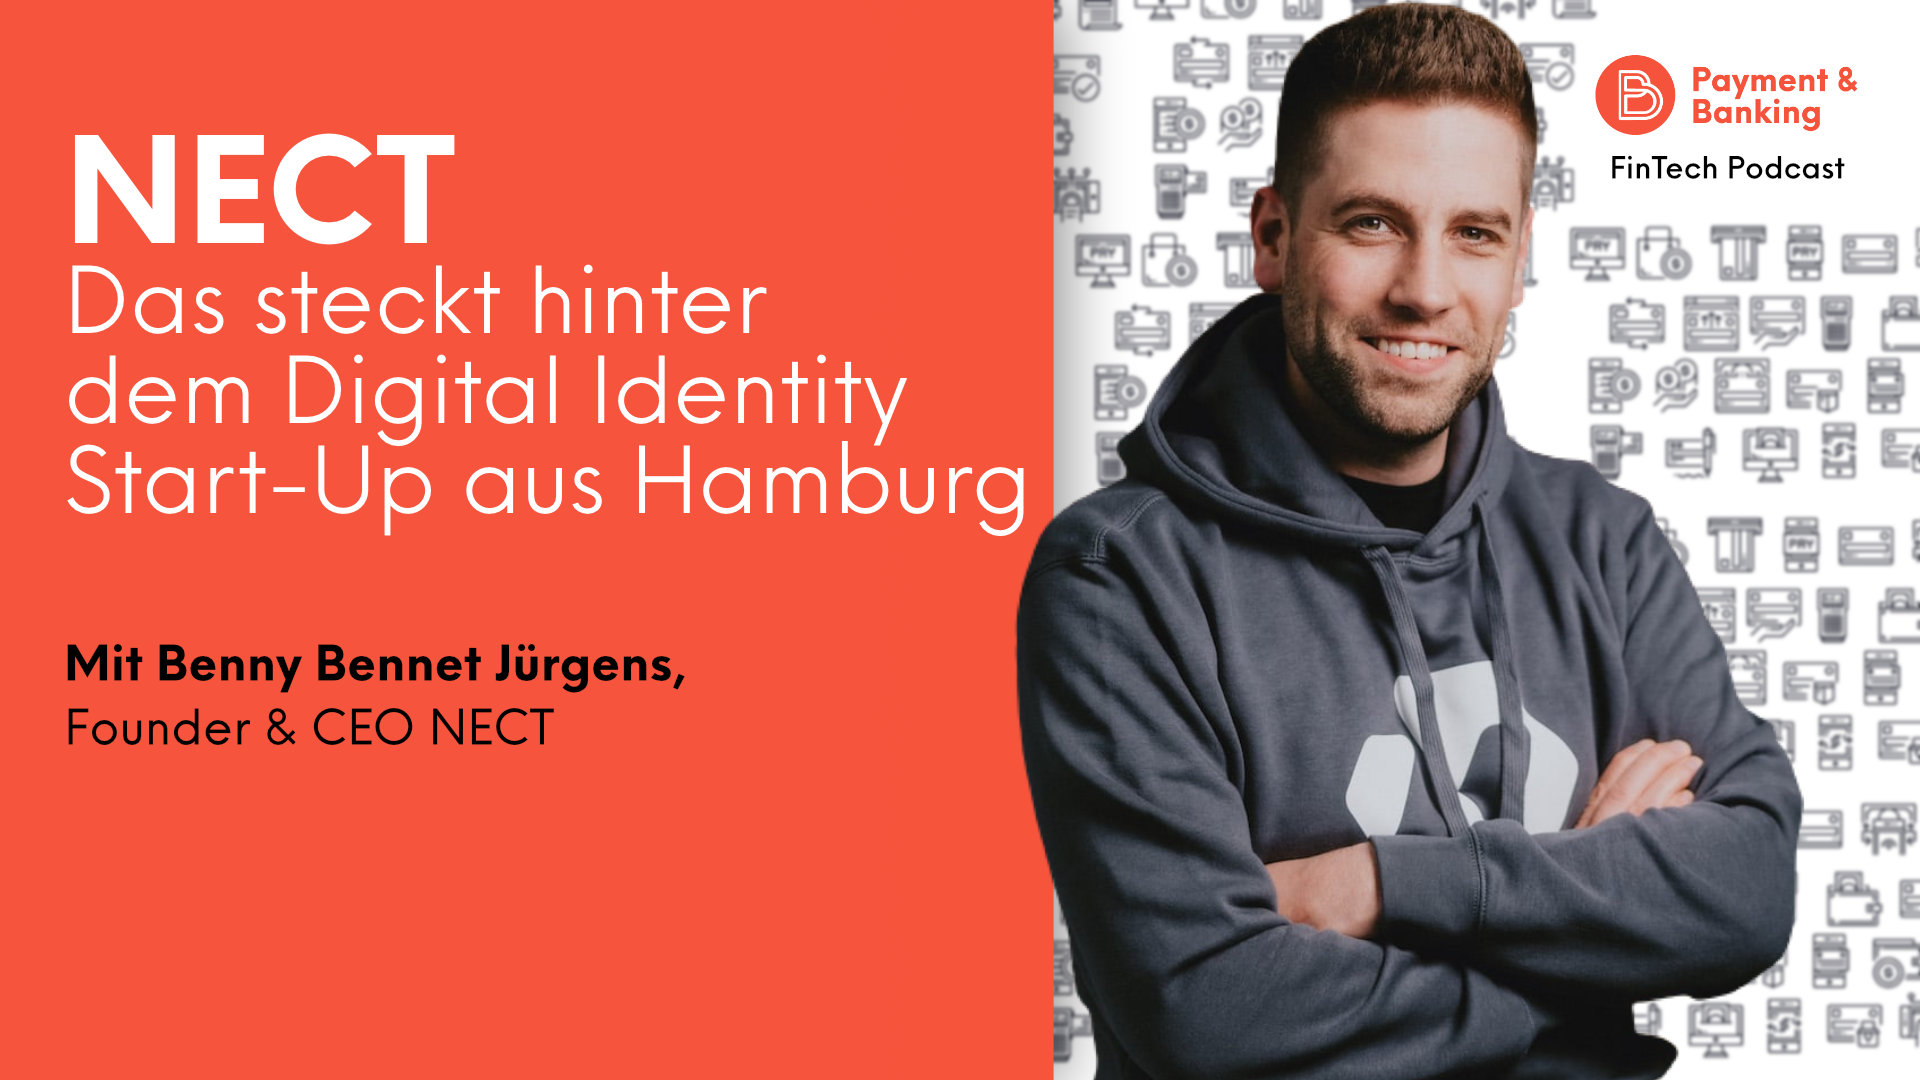 Das steckt hinter NECT, dem Digital Identity Start-Up aus Hamburg